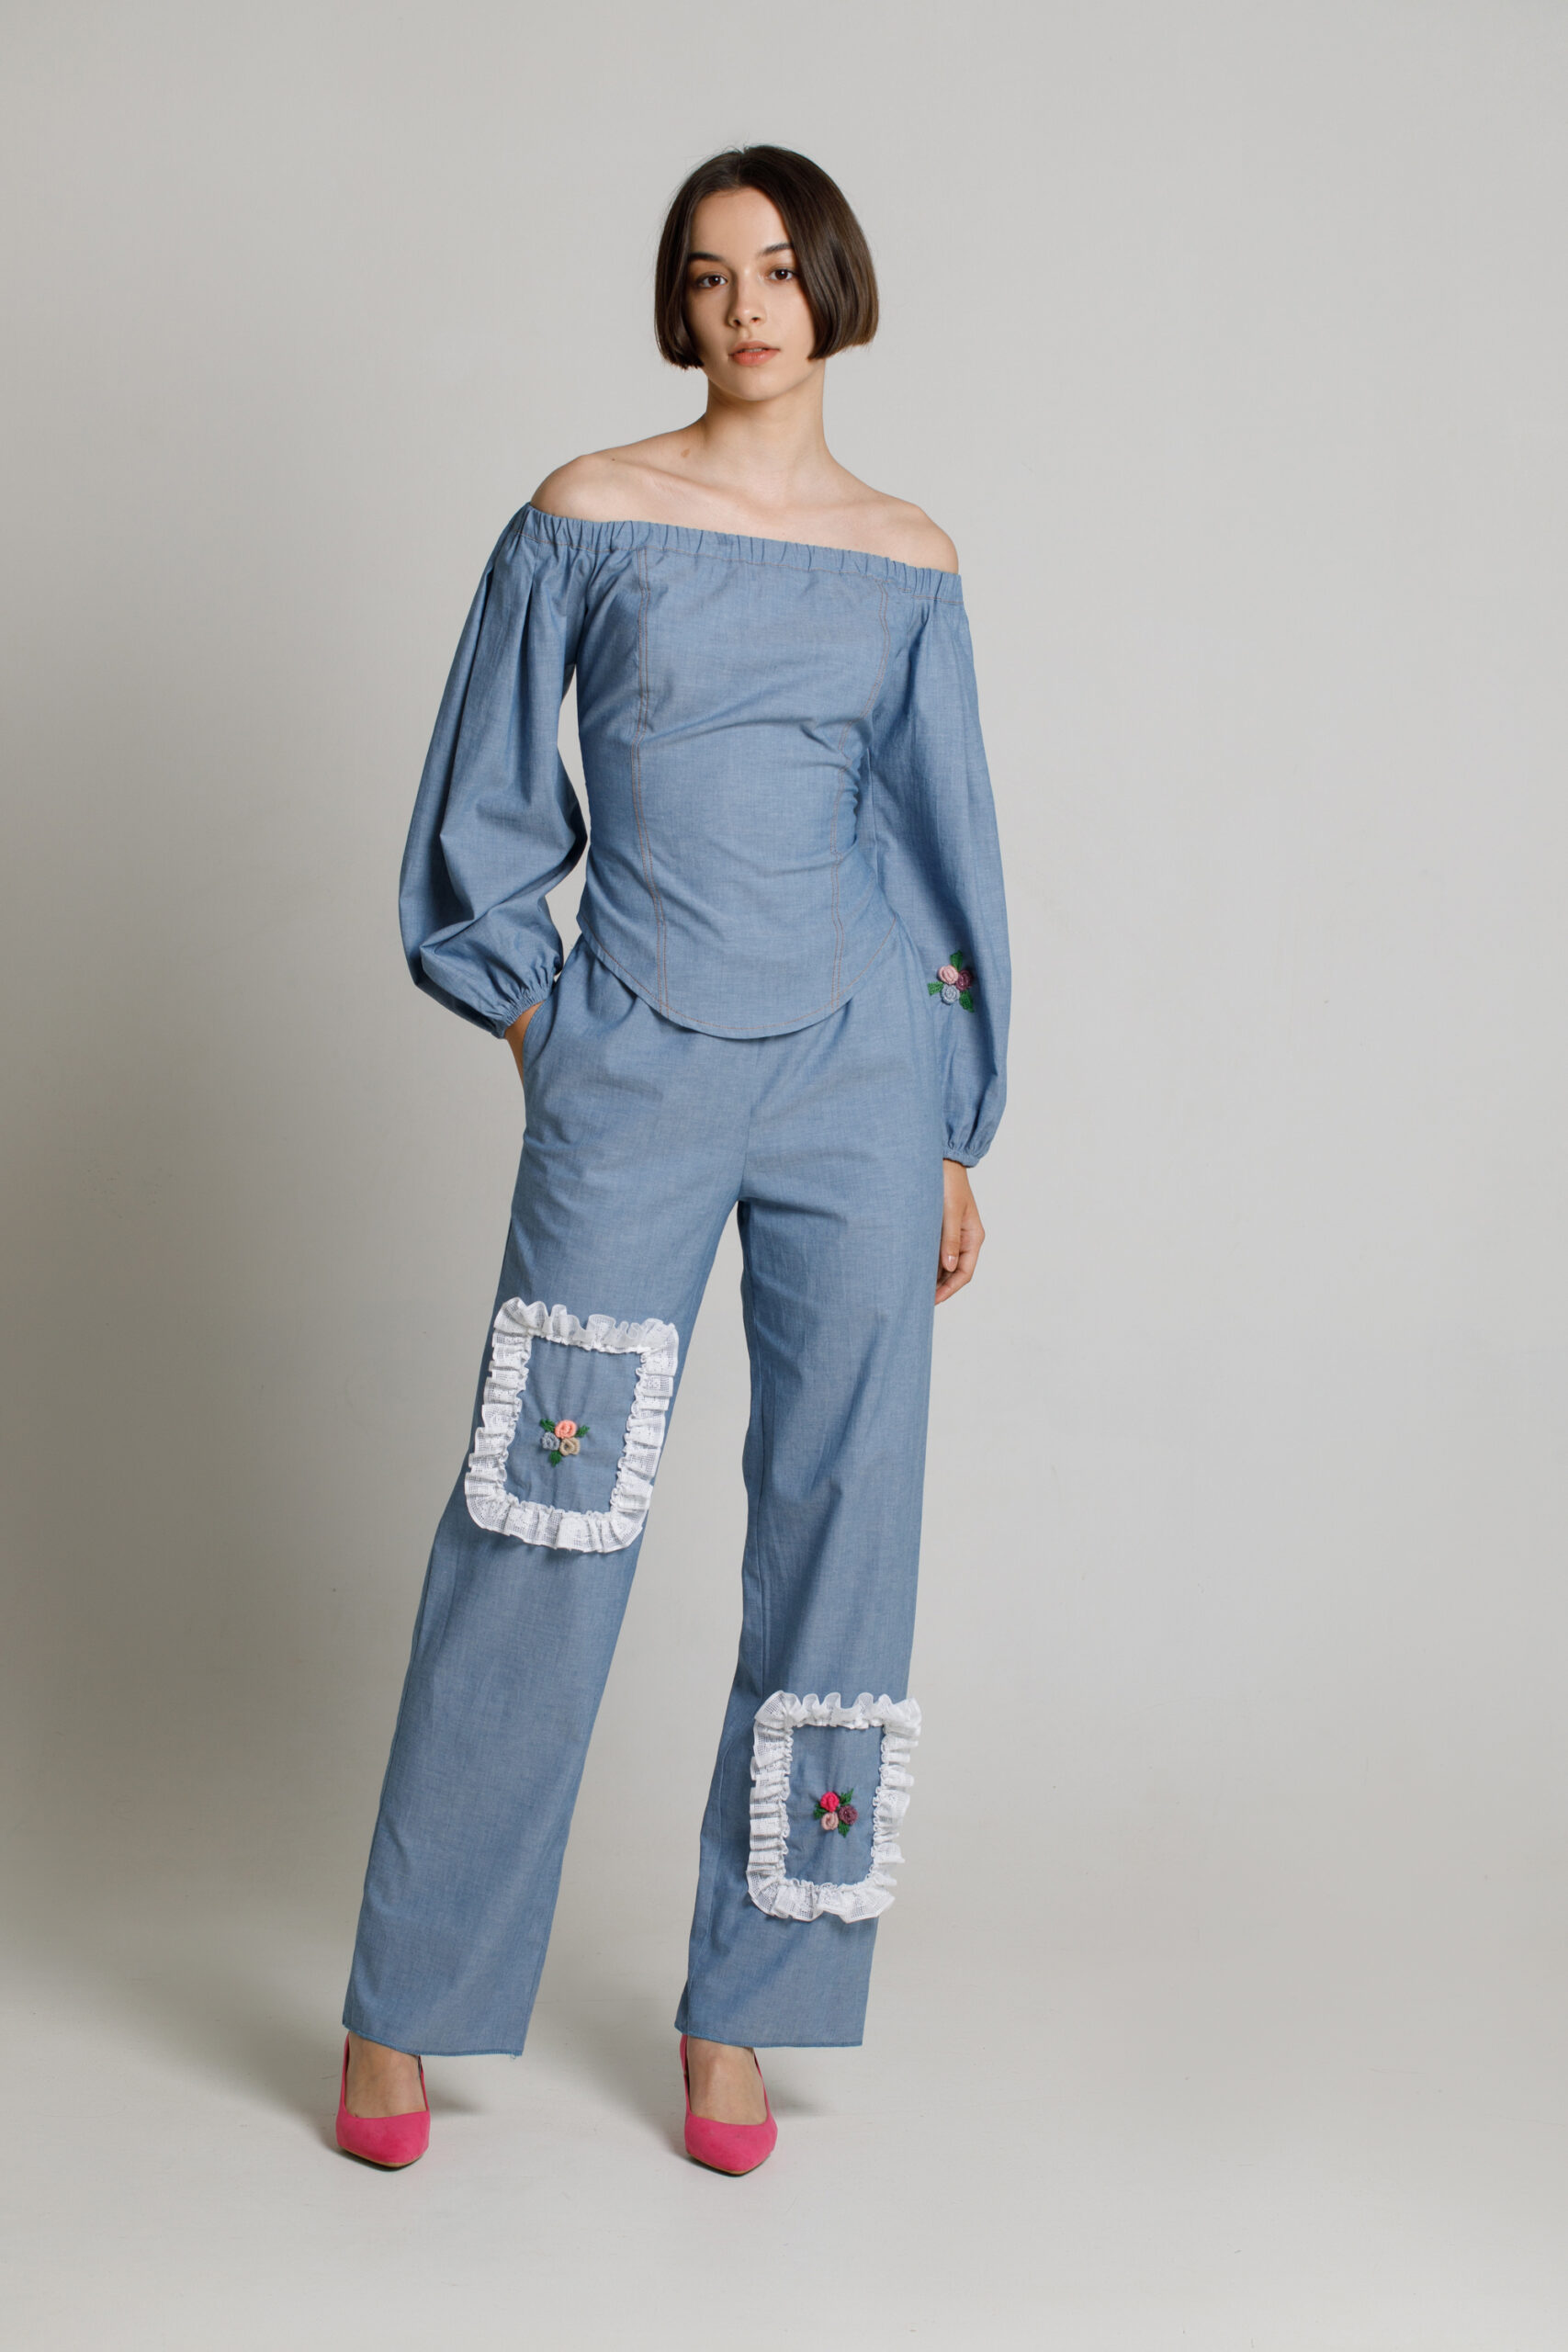 CIELO Elegant corset-type blouse made of blue denim. Natural fabrics, original design, handmade embroidery